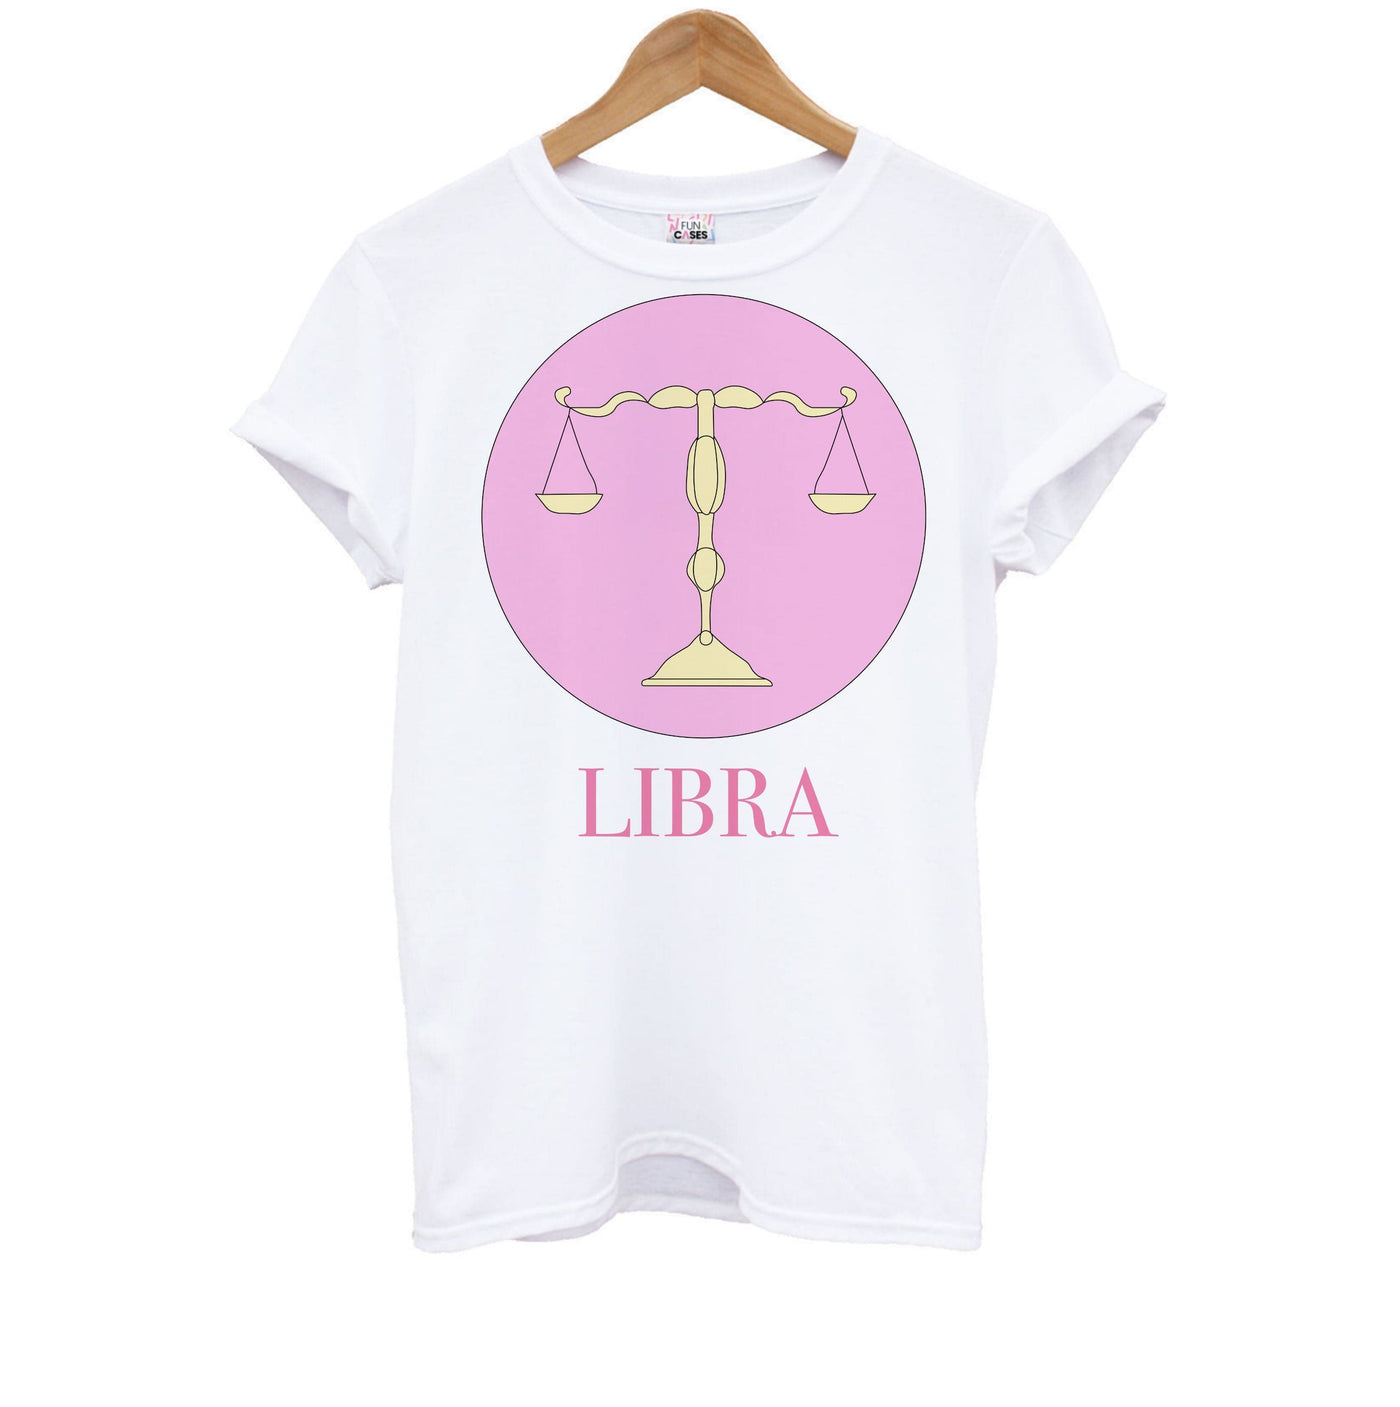 Libra - Tarot Cards Kids T-Shirt